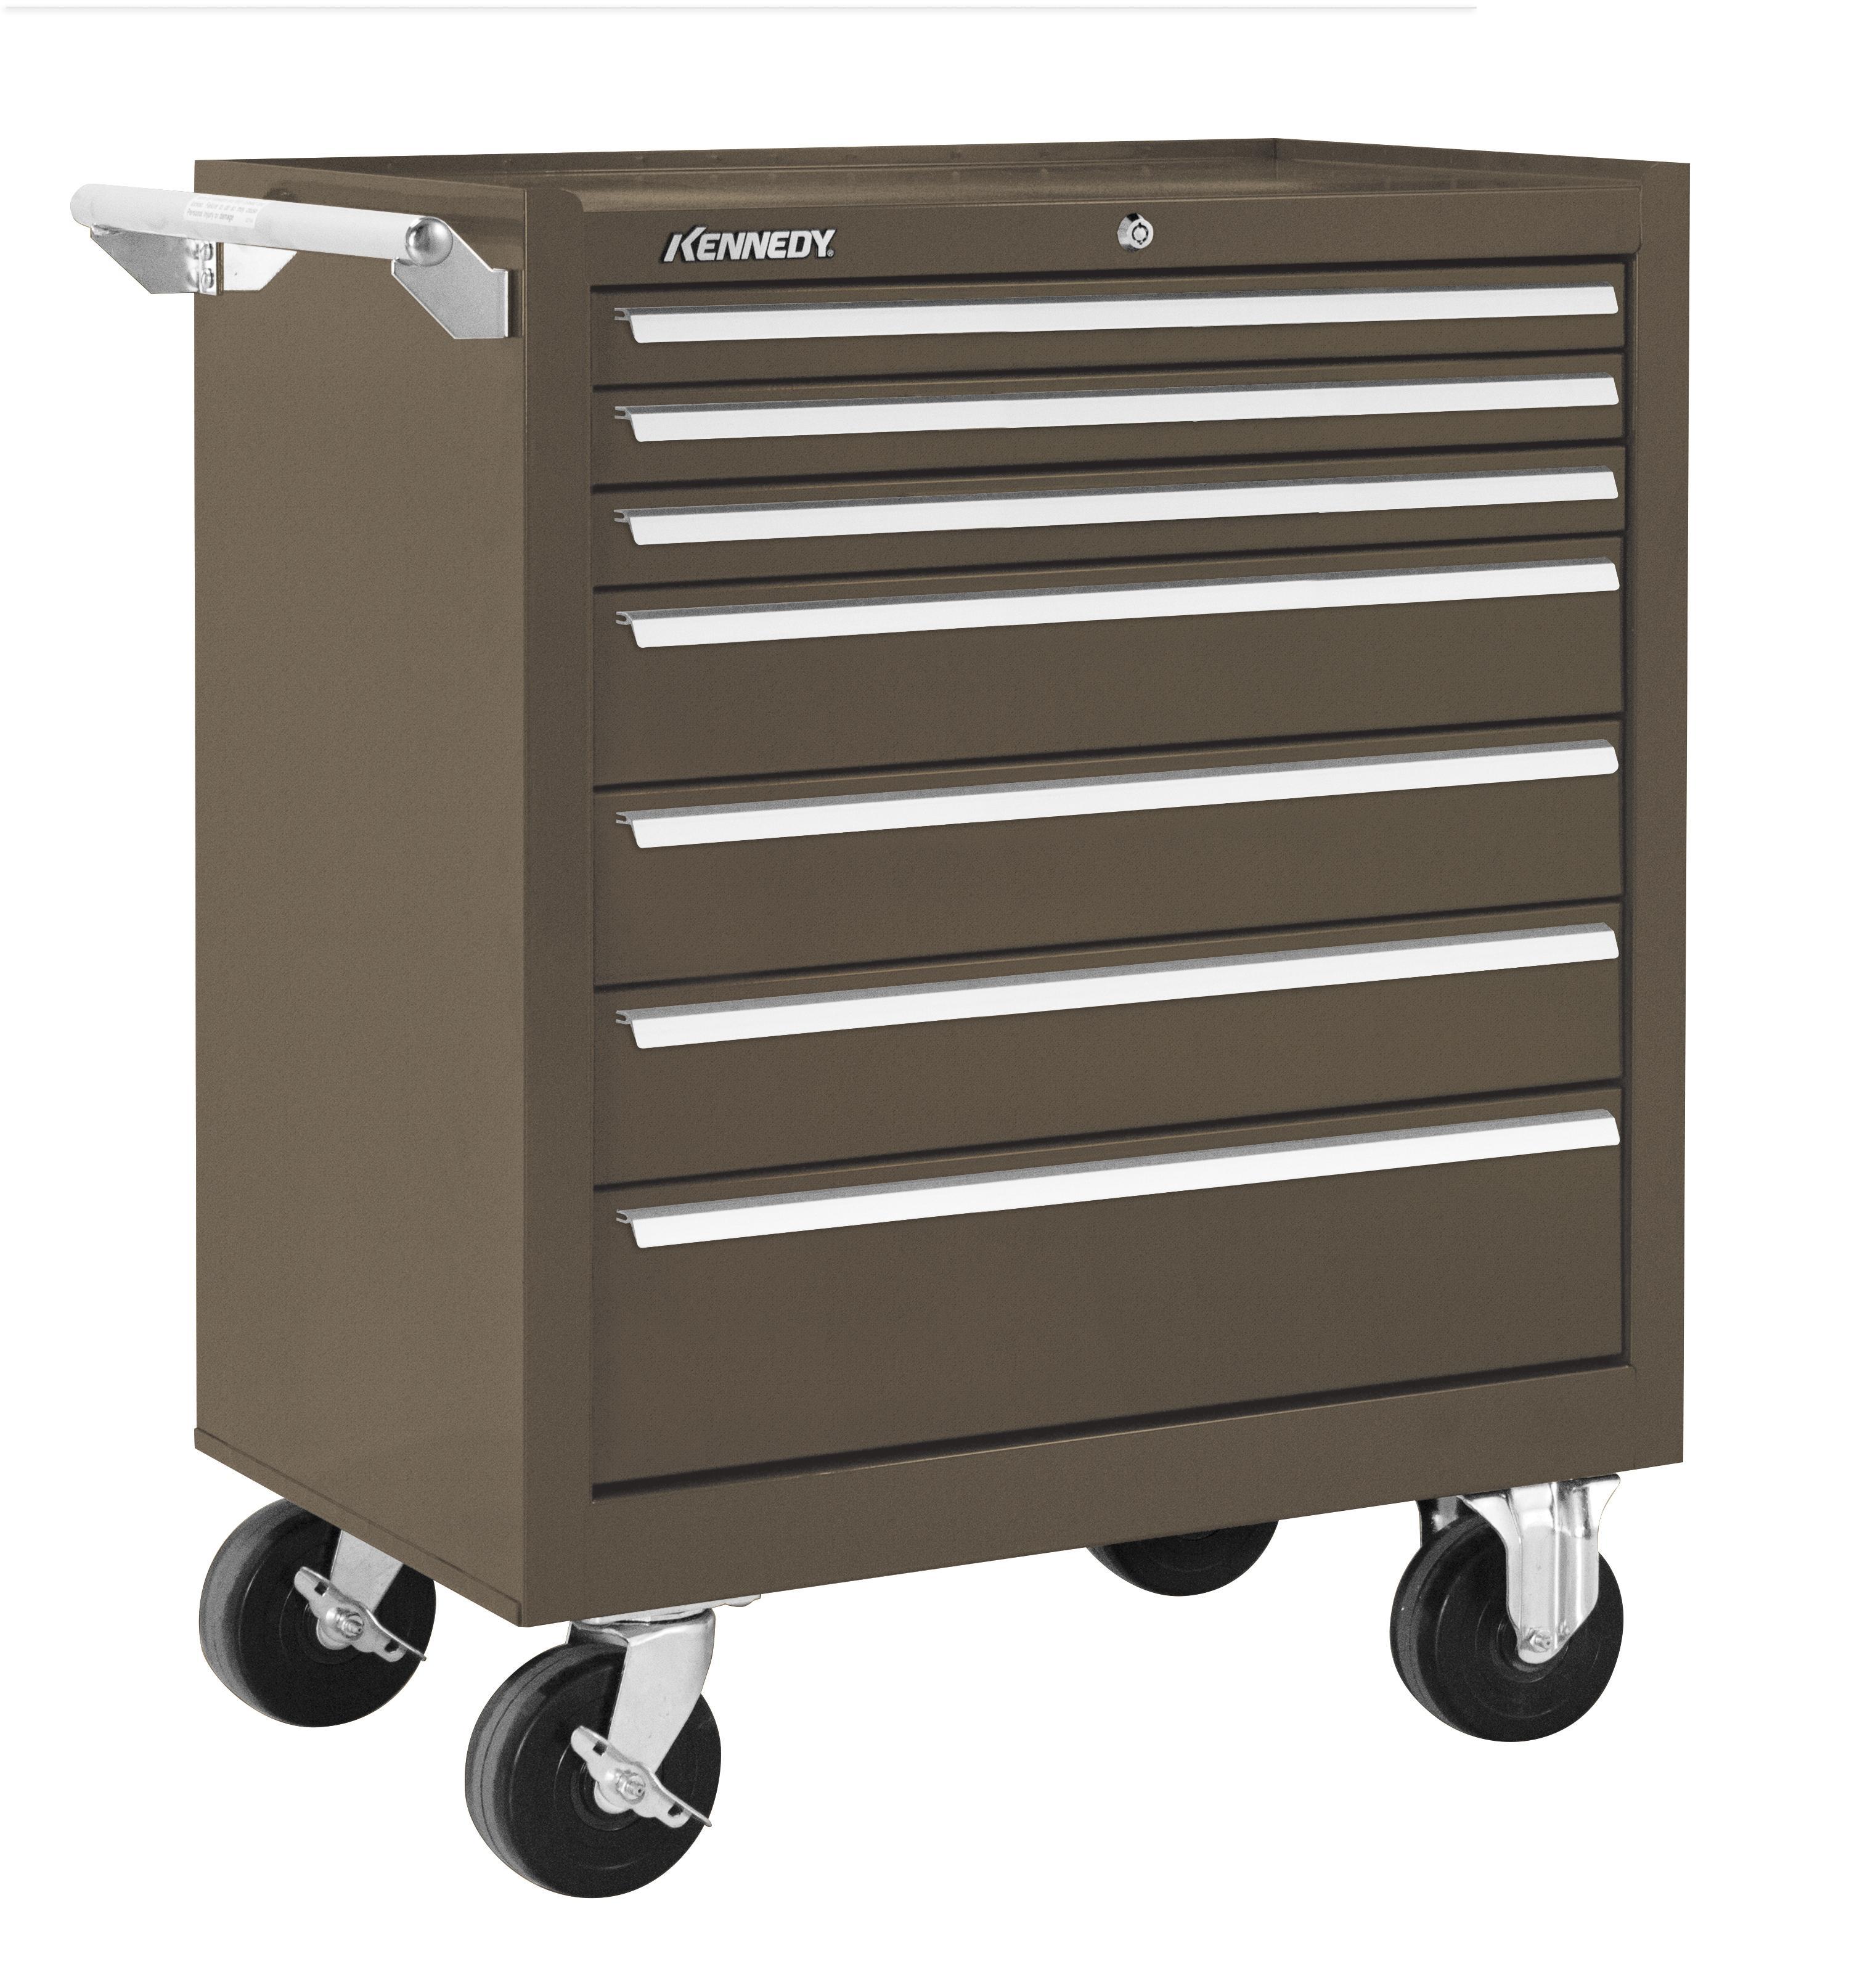 Kennedy® 310XB K1800 Industrial Double Bank Roller Cabinet, 29-1/16 in H x 39-3/8 in W x 18 in D, 18 ga THK